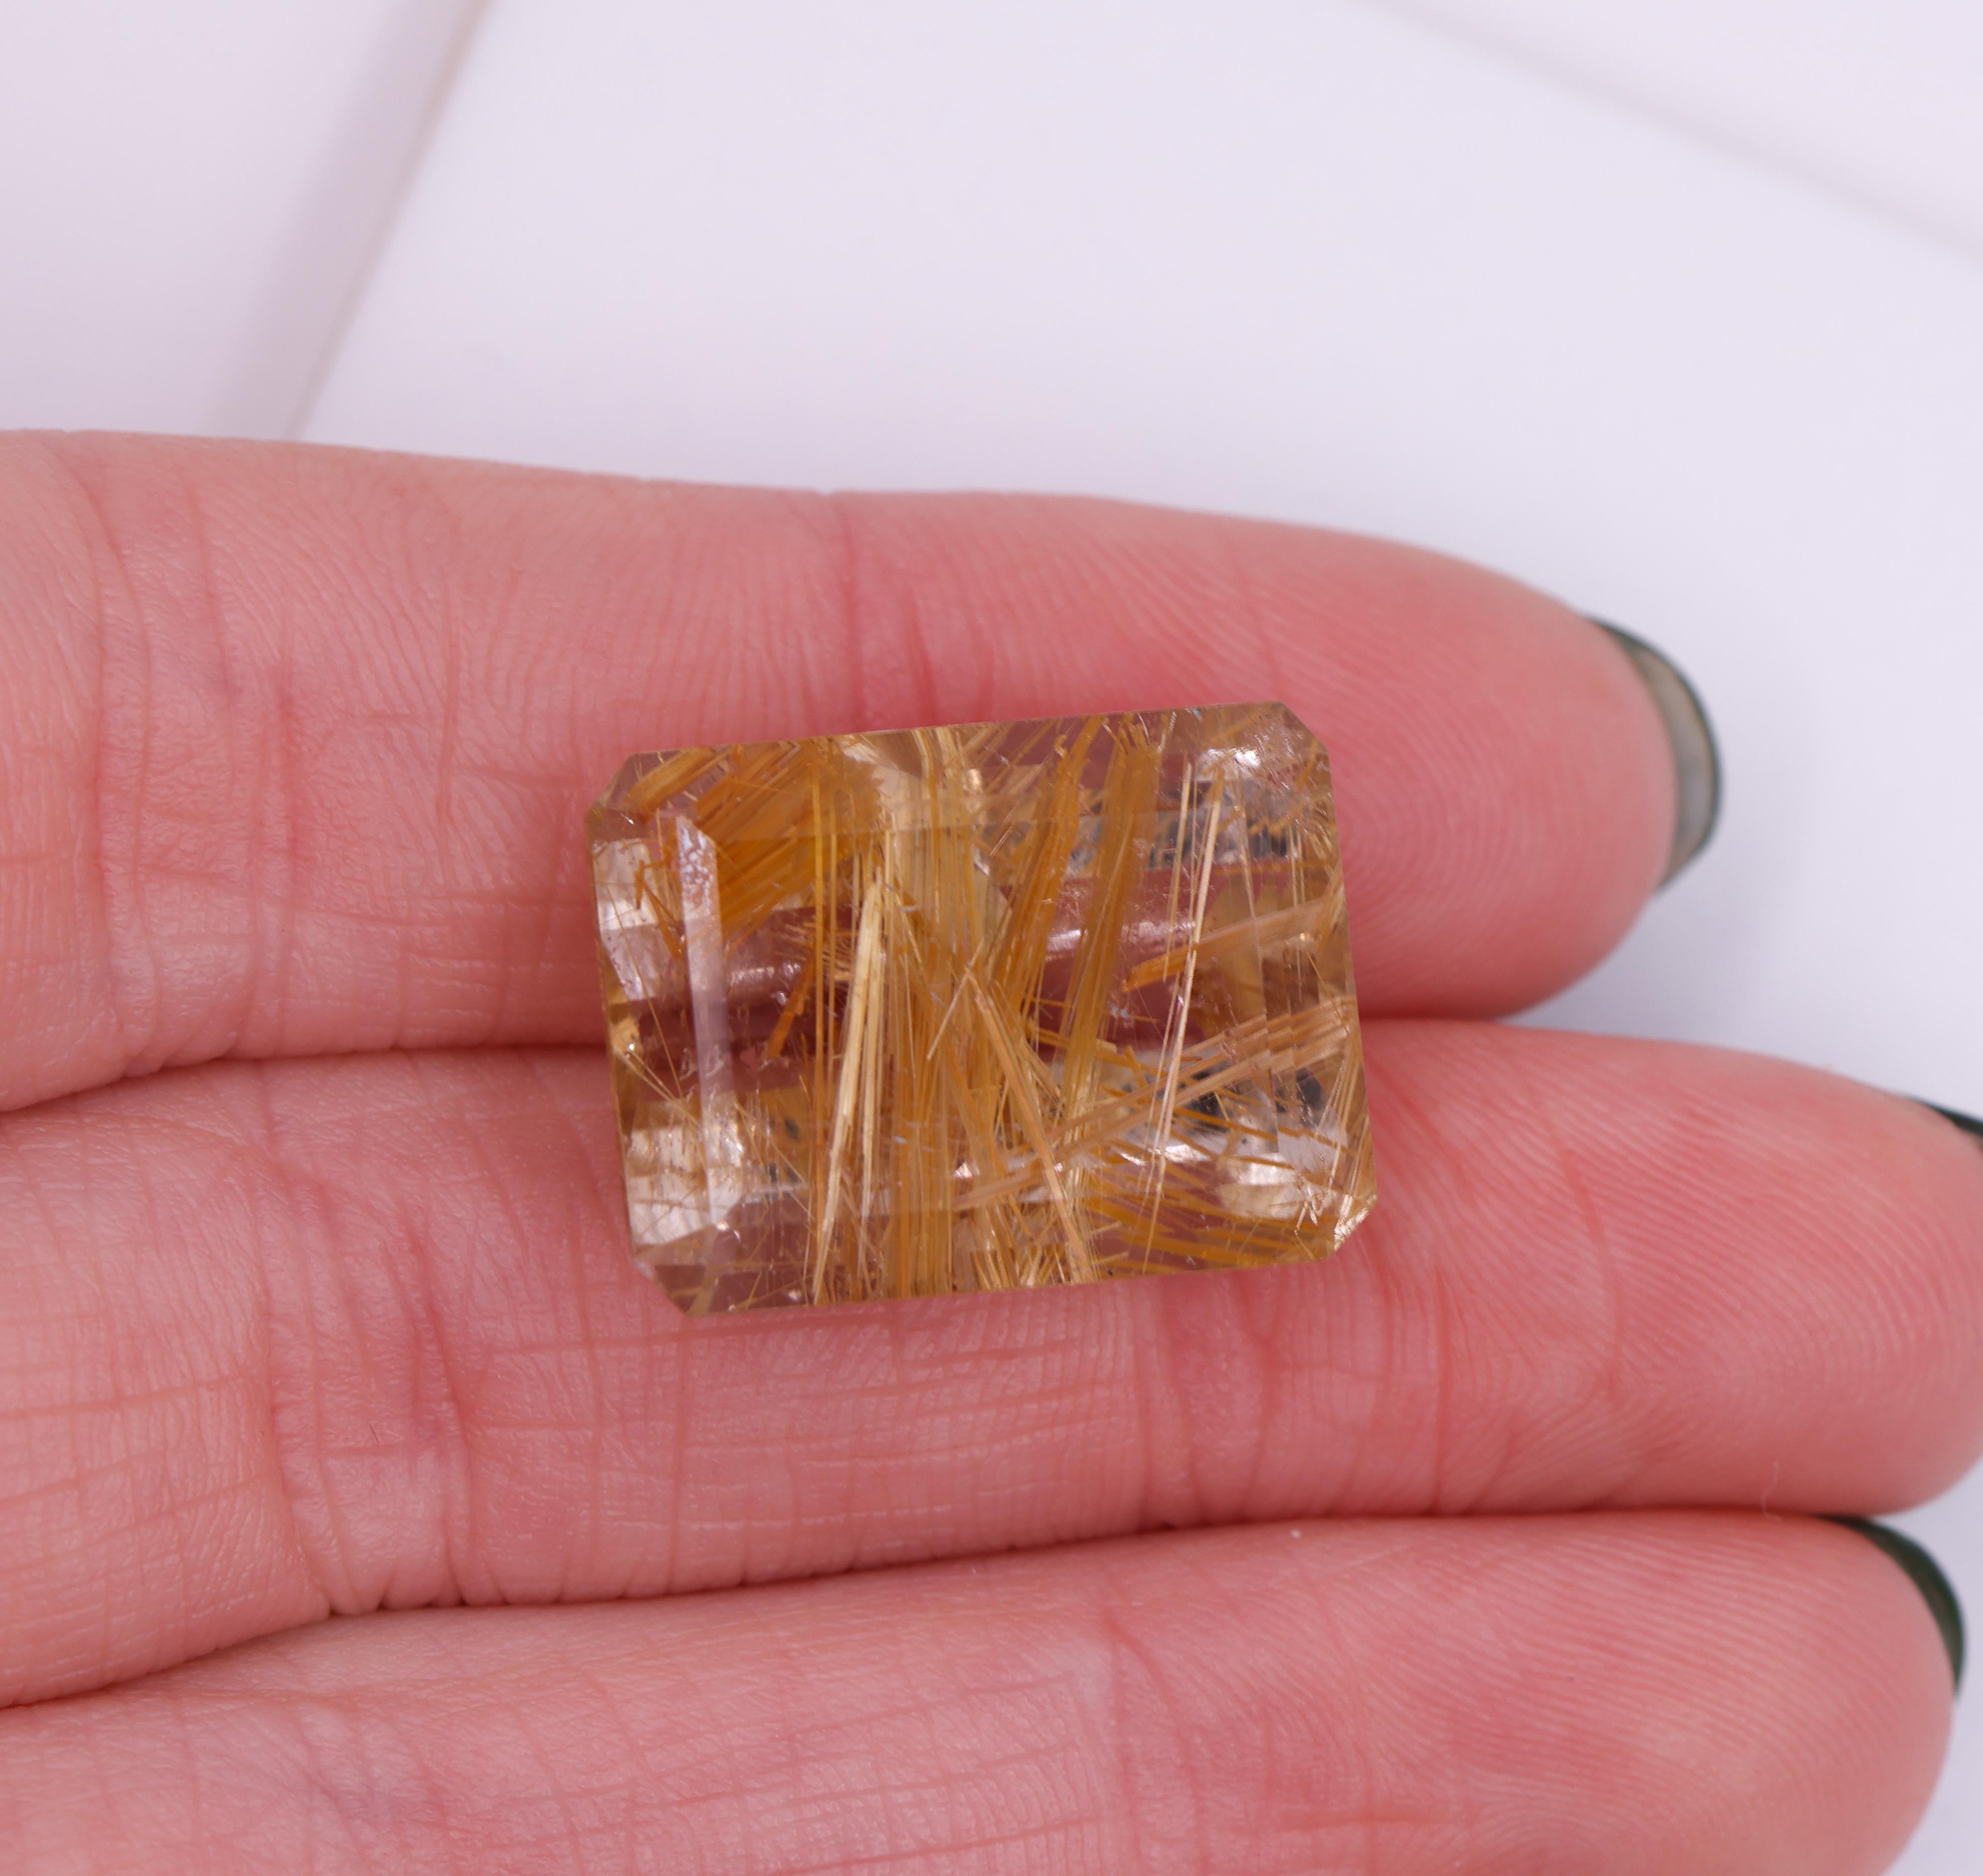 Nous vous présentons un quartz rutilé allongé de 15,86 carats, taille émeraude, en vrac ! Cette pierre précieuse présente une forme rectangulaire avec des facettes précises qui accentuent sa clarté et sa brillance. Les inclusions de rutile dans le